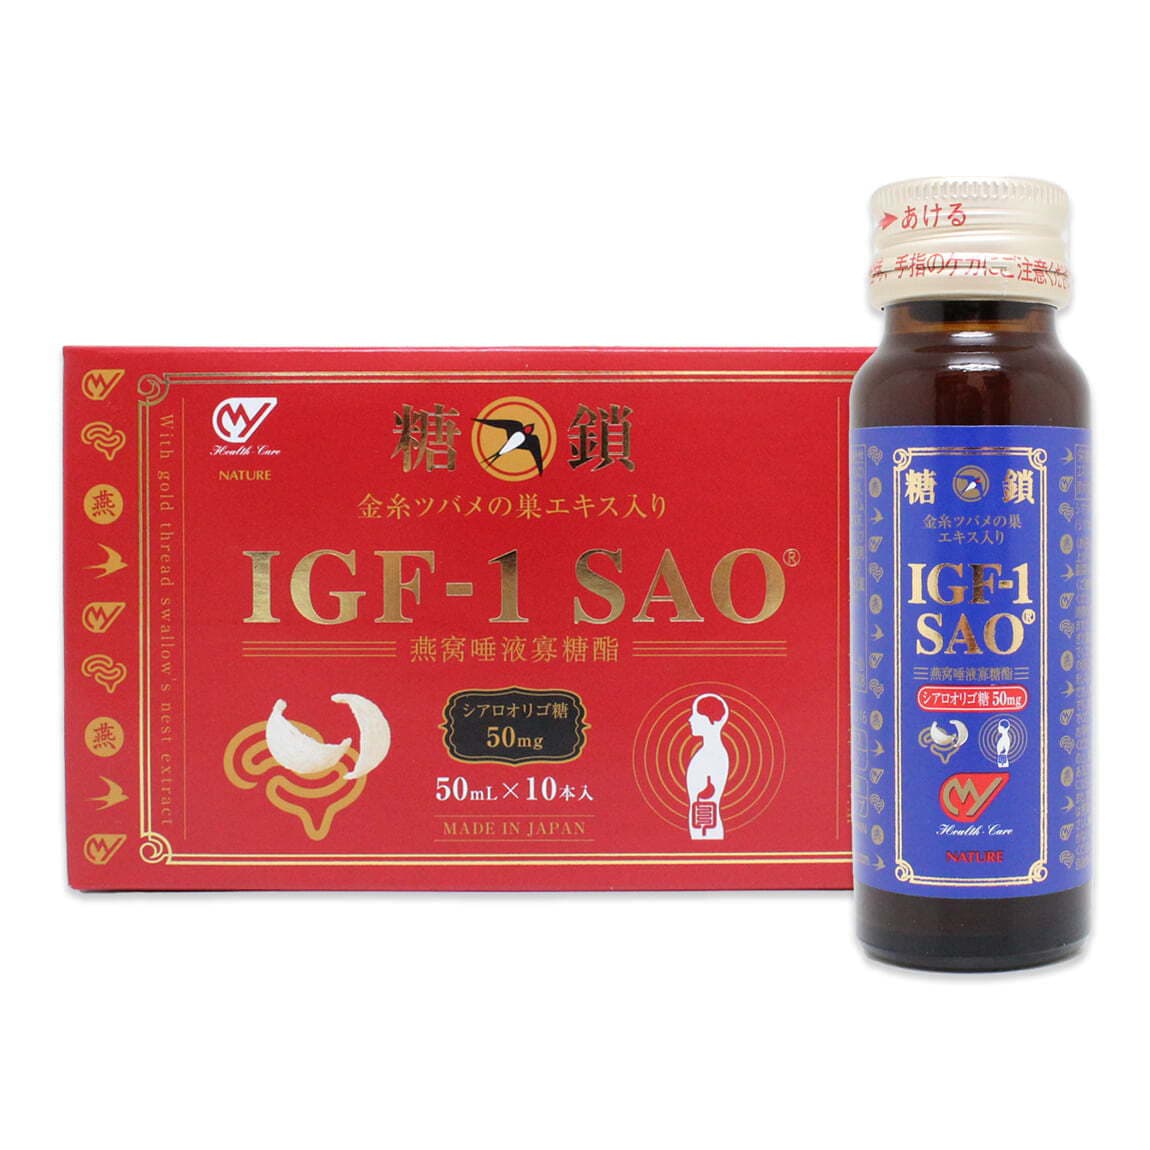 IGF-1 SAO 糖鎖